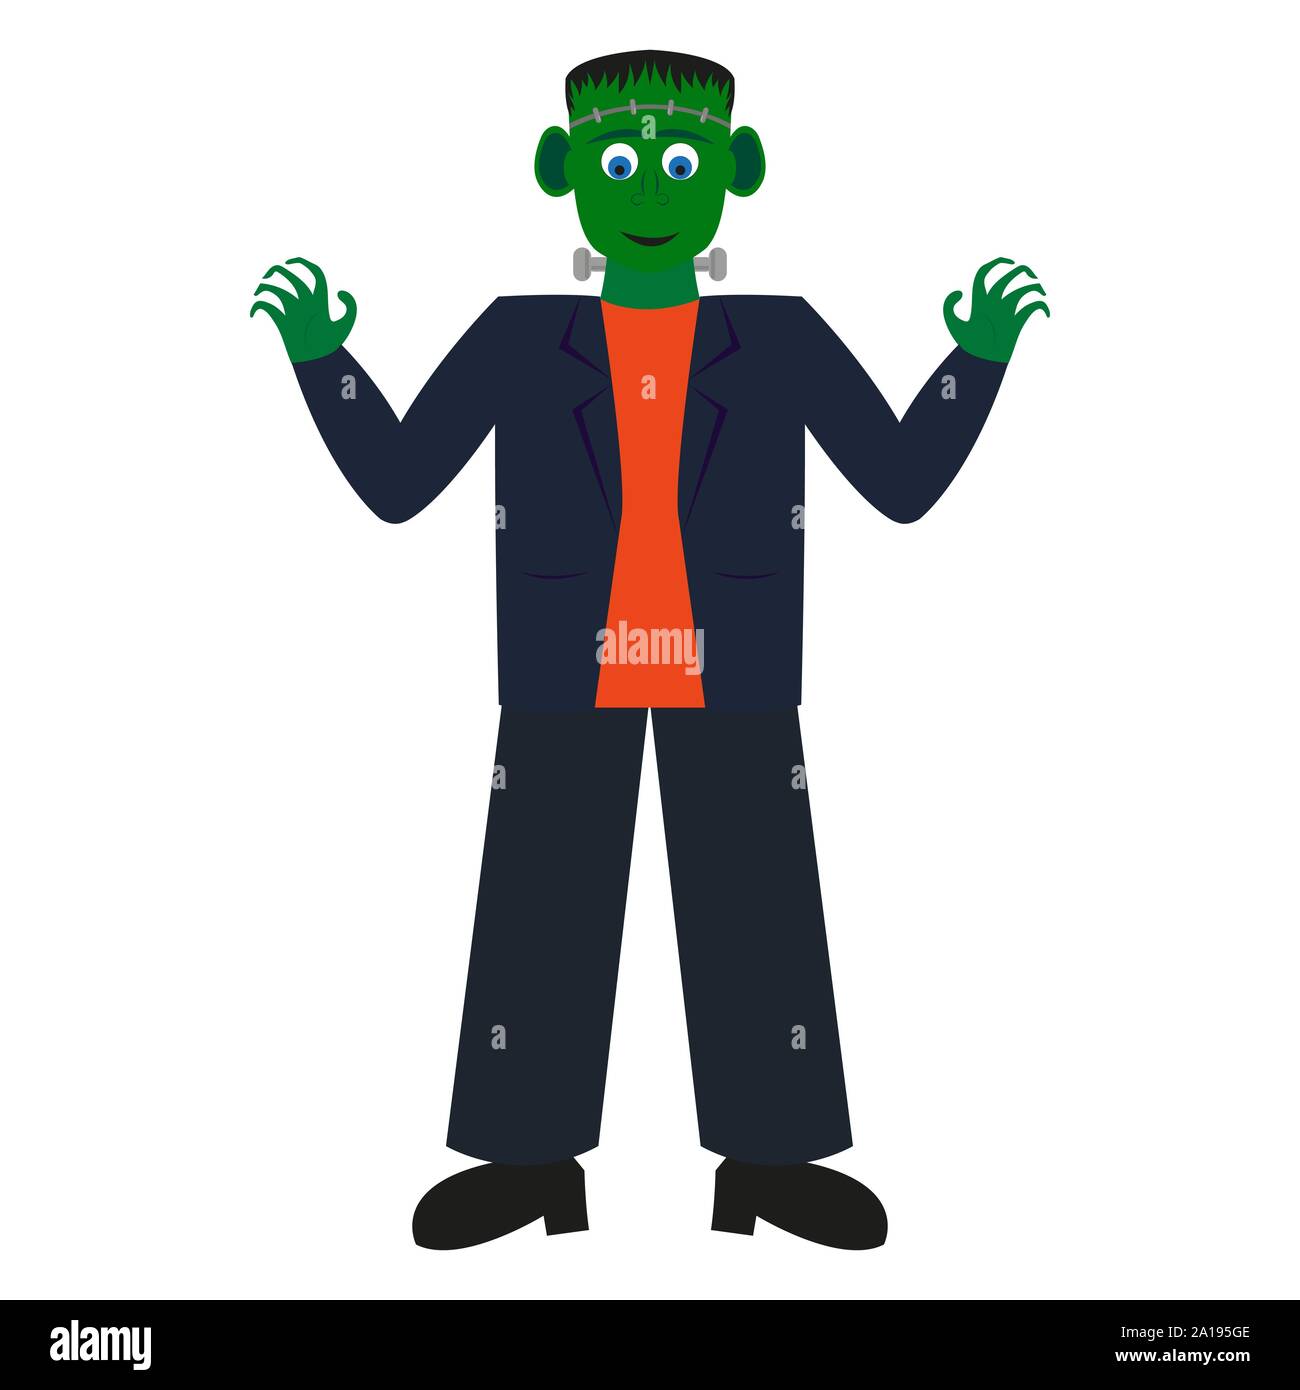 Frankenstein monster illustration Stock Vector